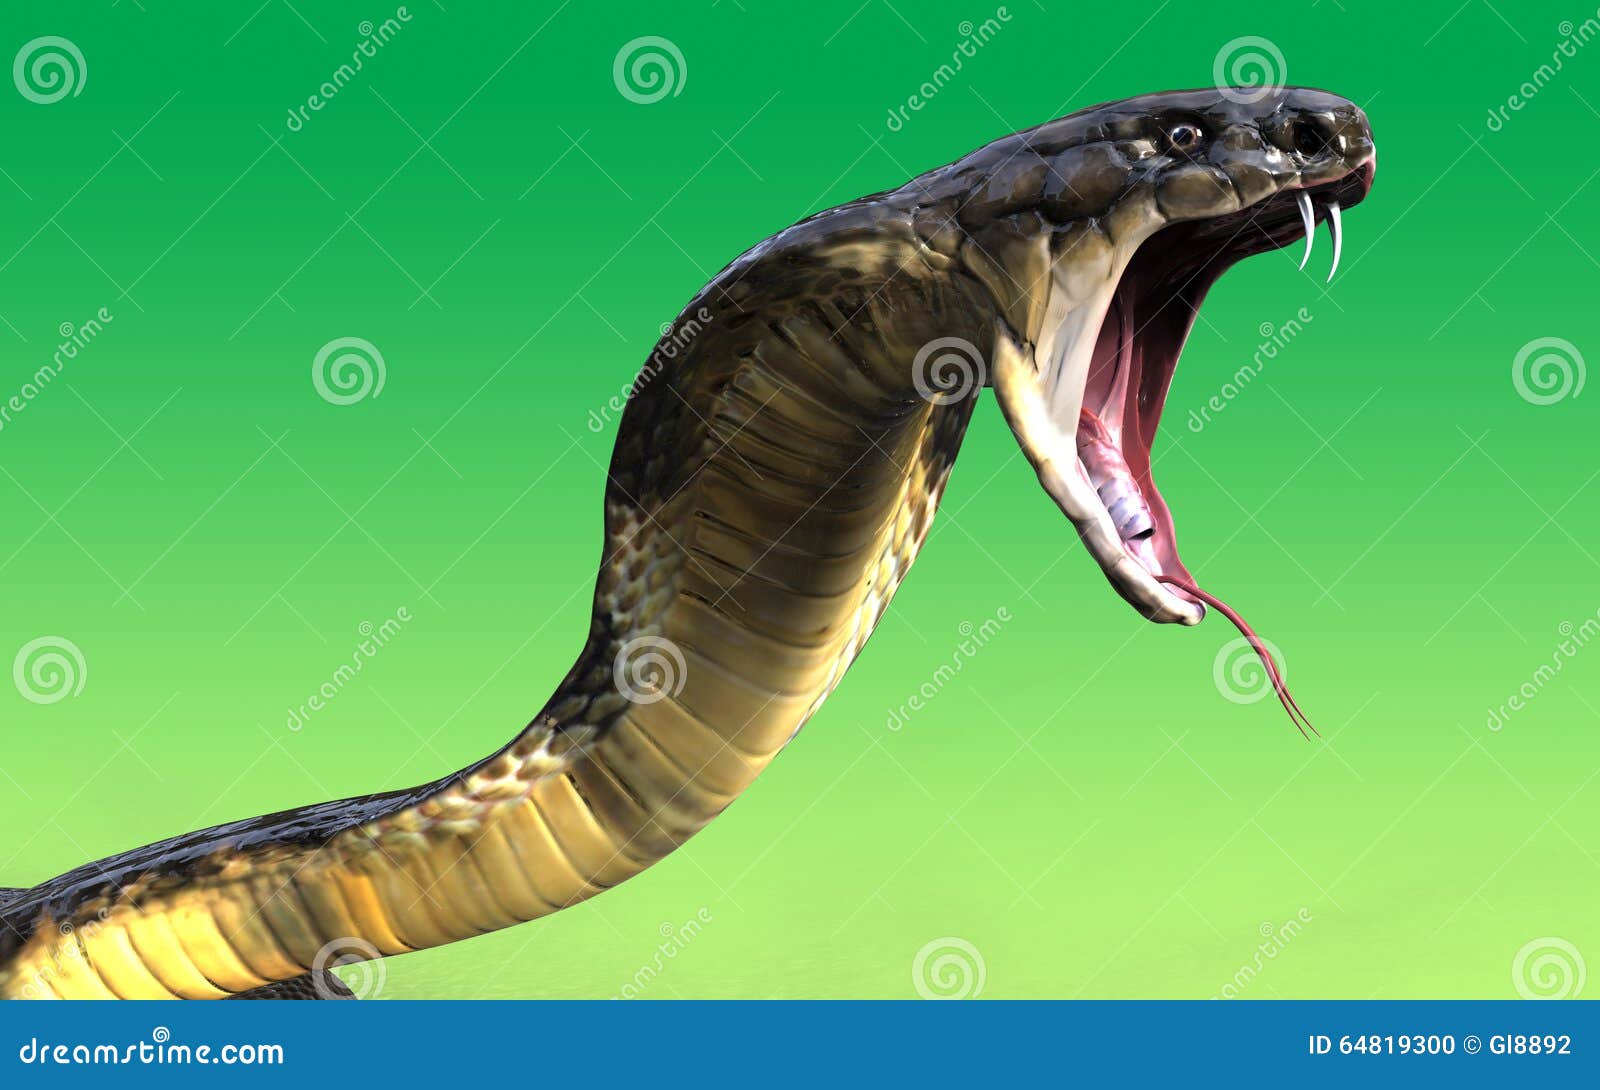 Cobra rei cobra serpente chifrudo dragão táticas jogo de